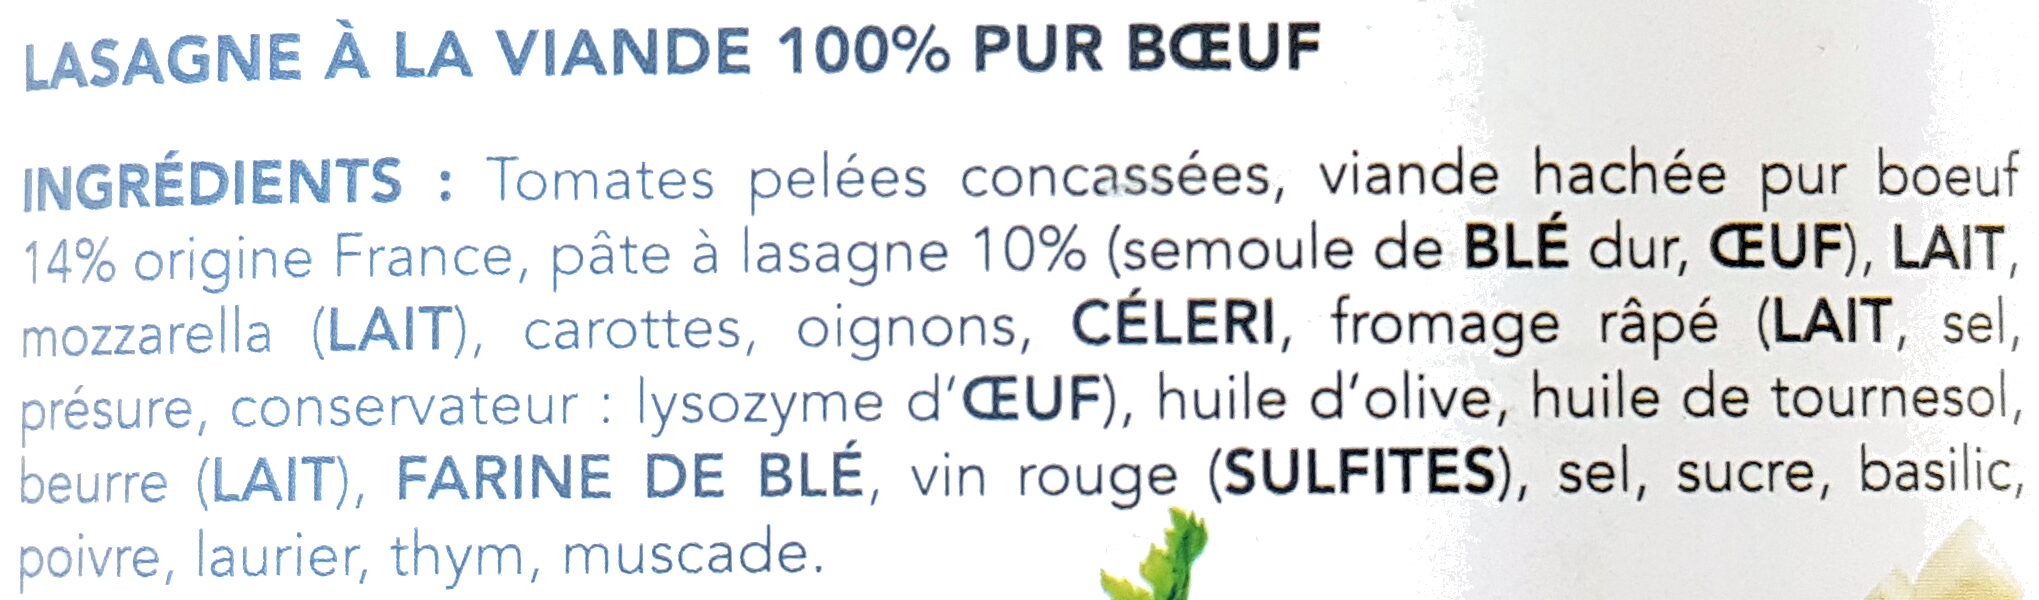 Lasagne bolognaise 100% pur bœuf origine France - المكونات - fr